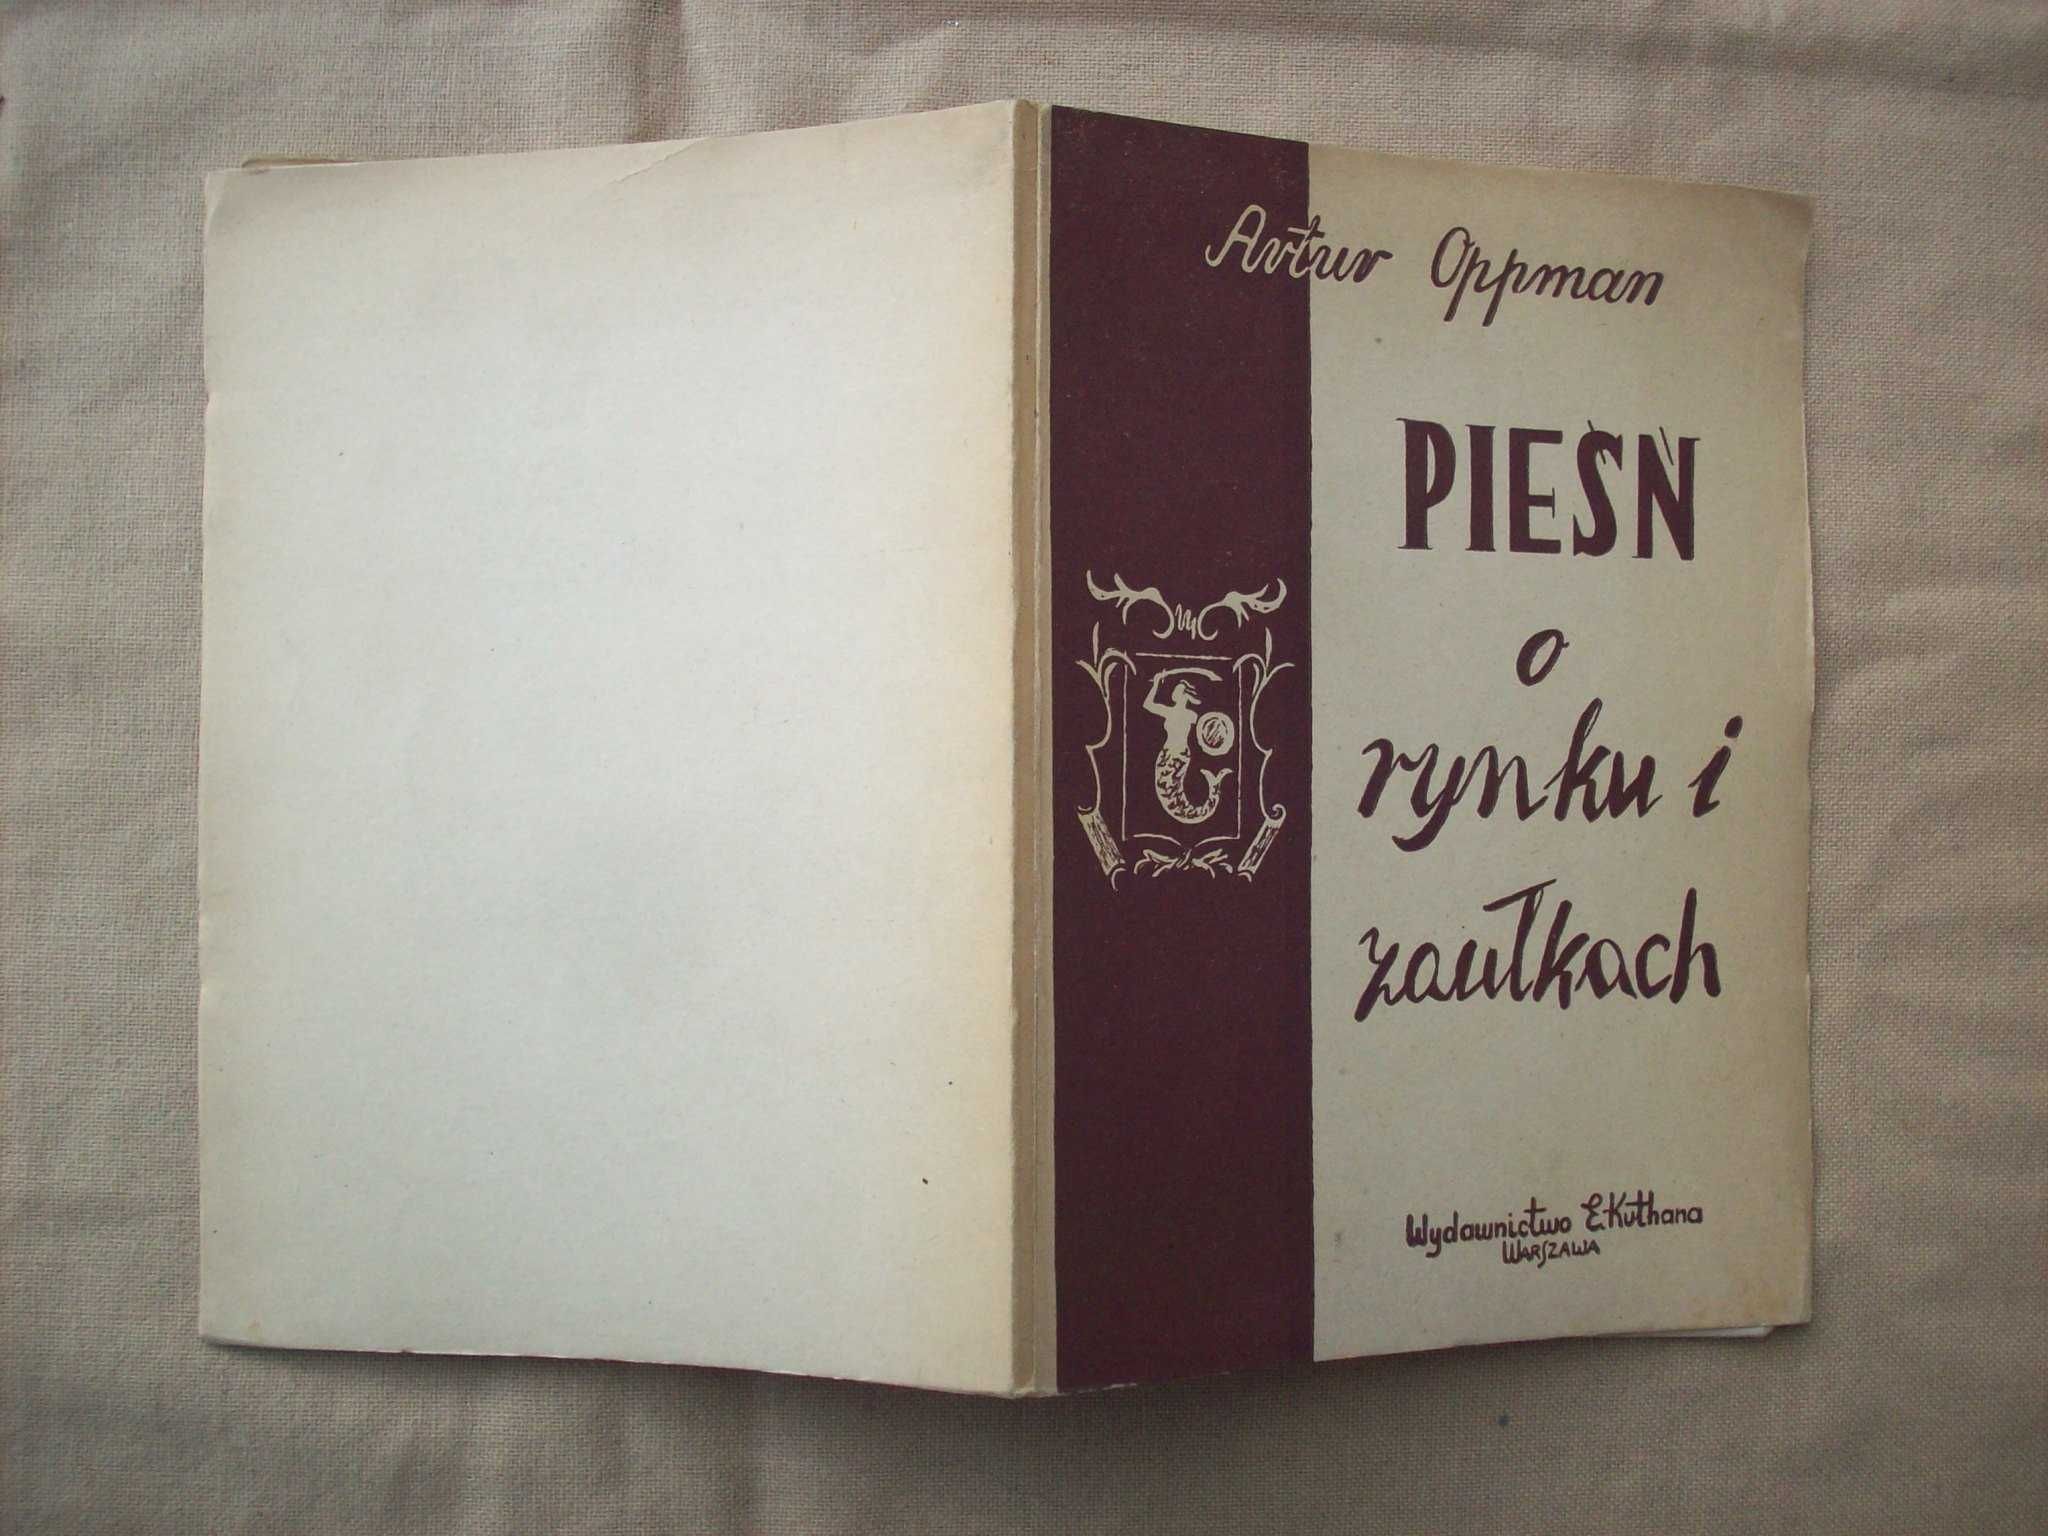 Pieśń o rynku i zaułkach, A.Oppman, 1947.